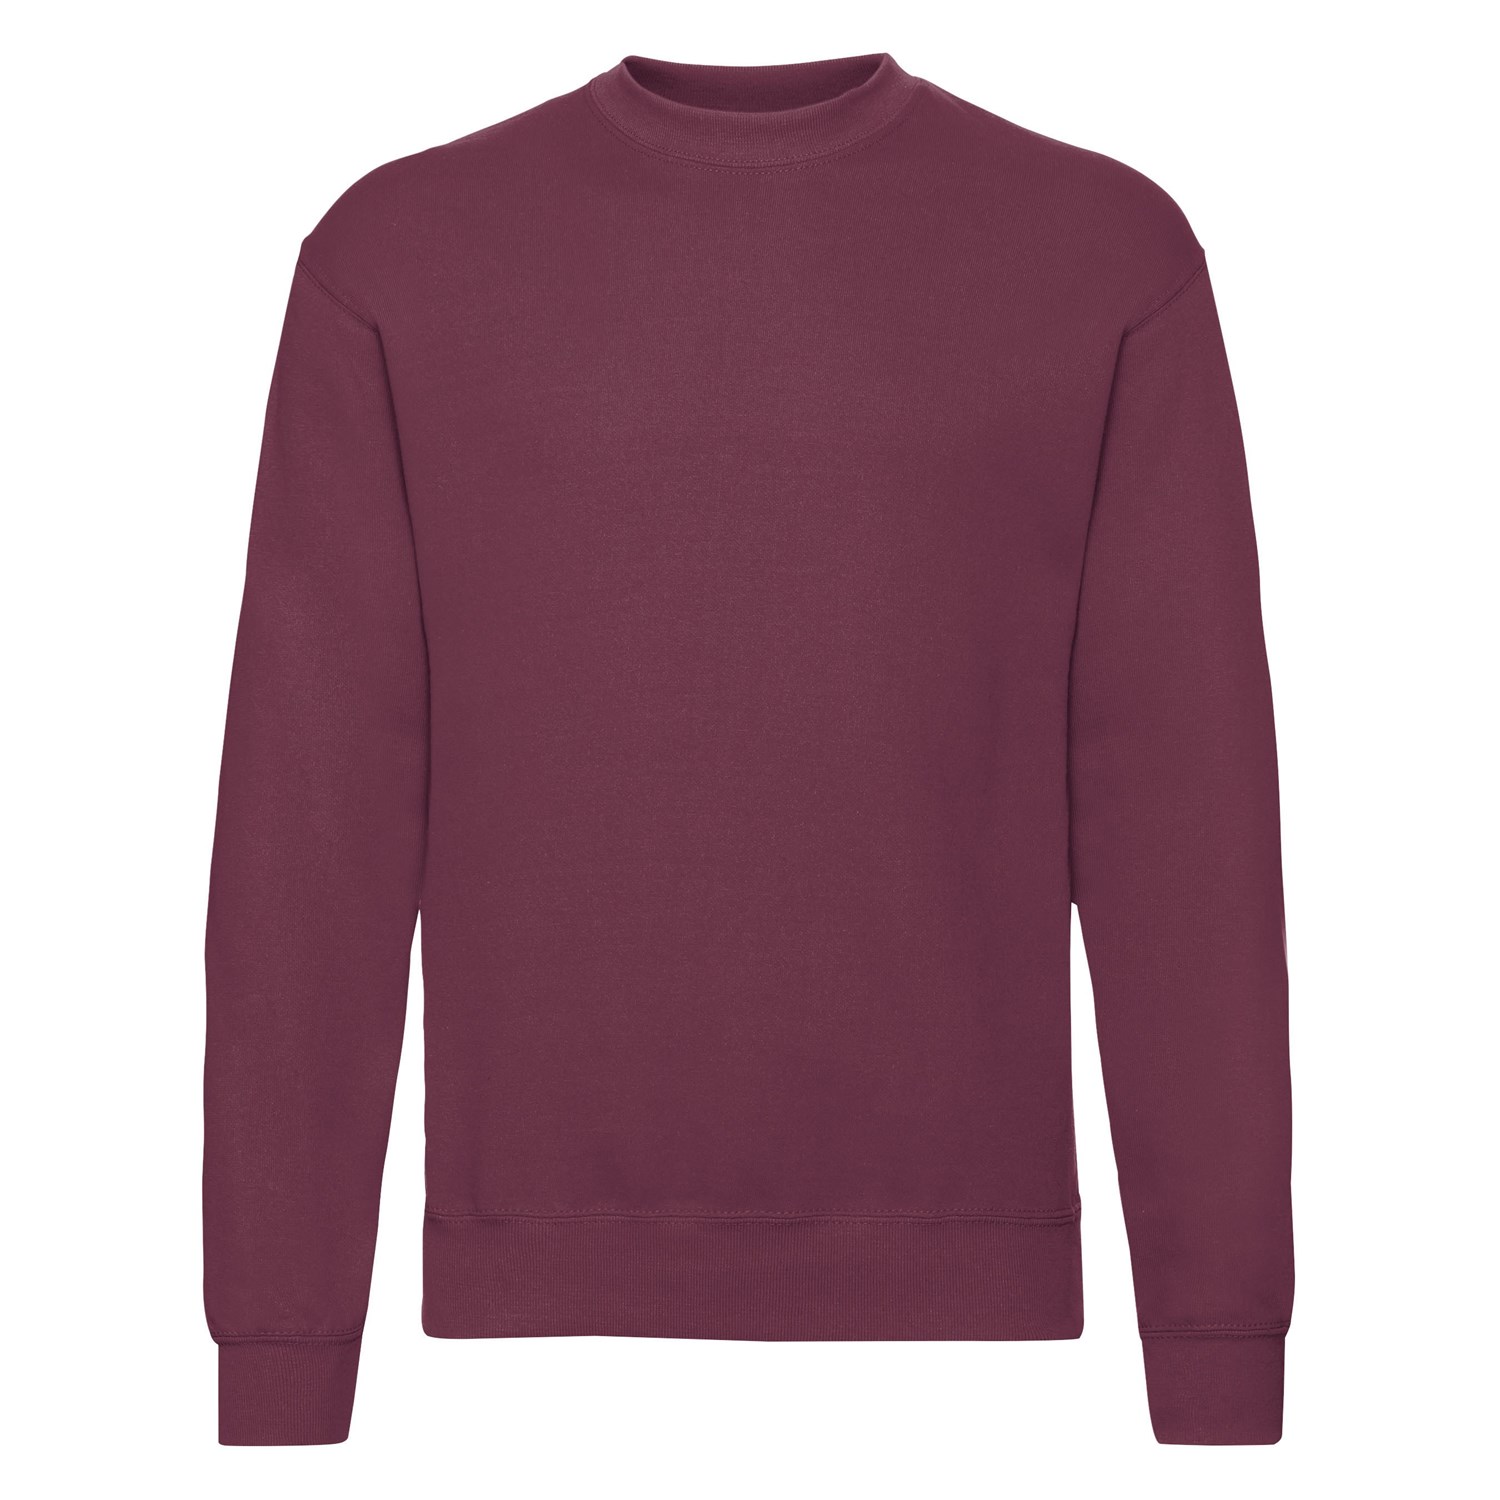 Burgundy Men's Sweatshirt Set-in Sweat Fruit of the Loom